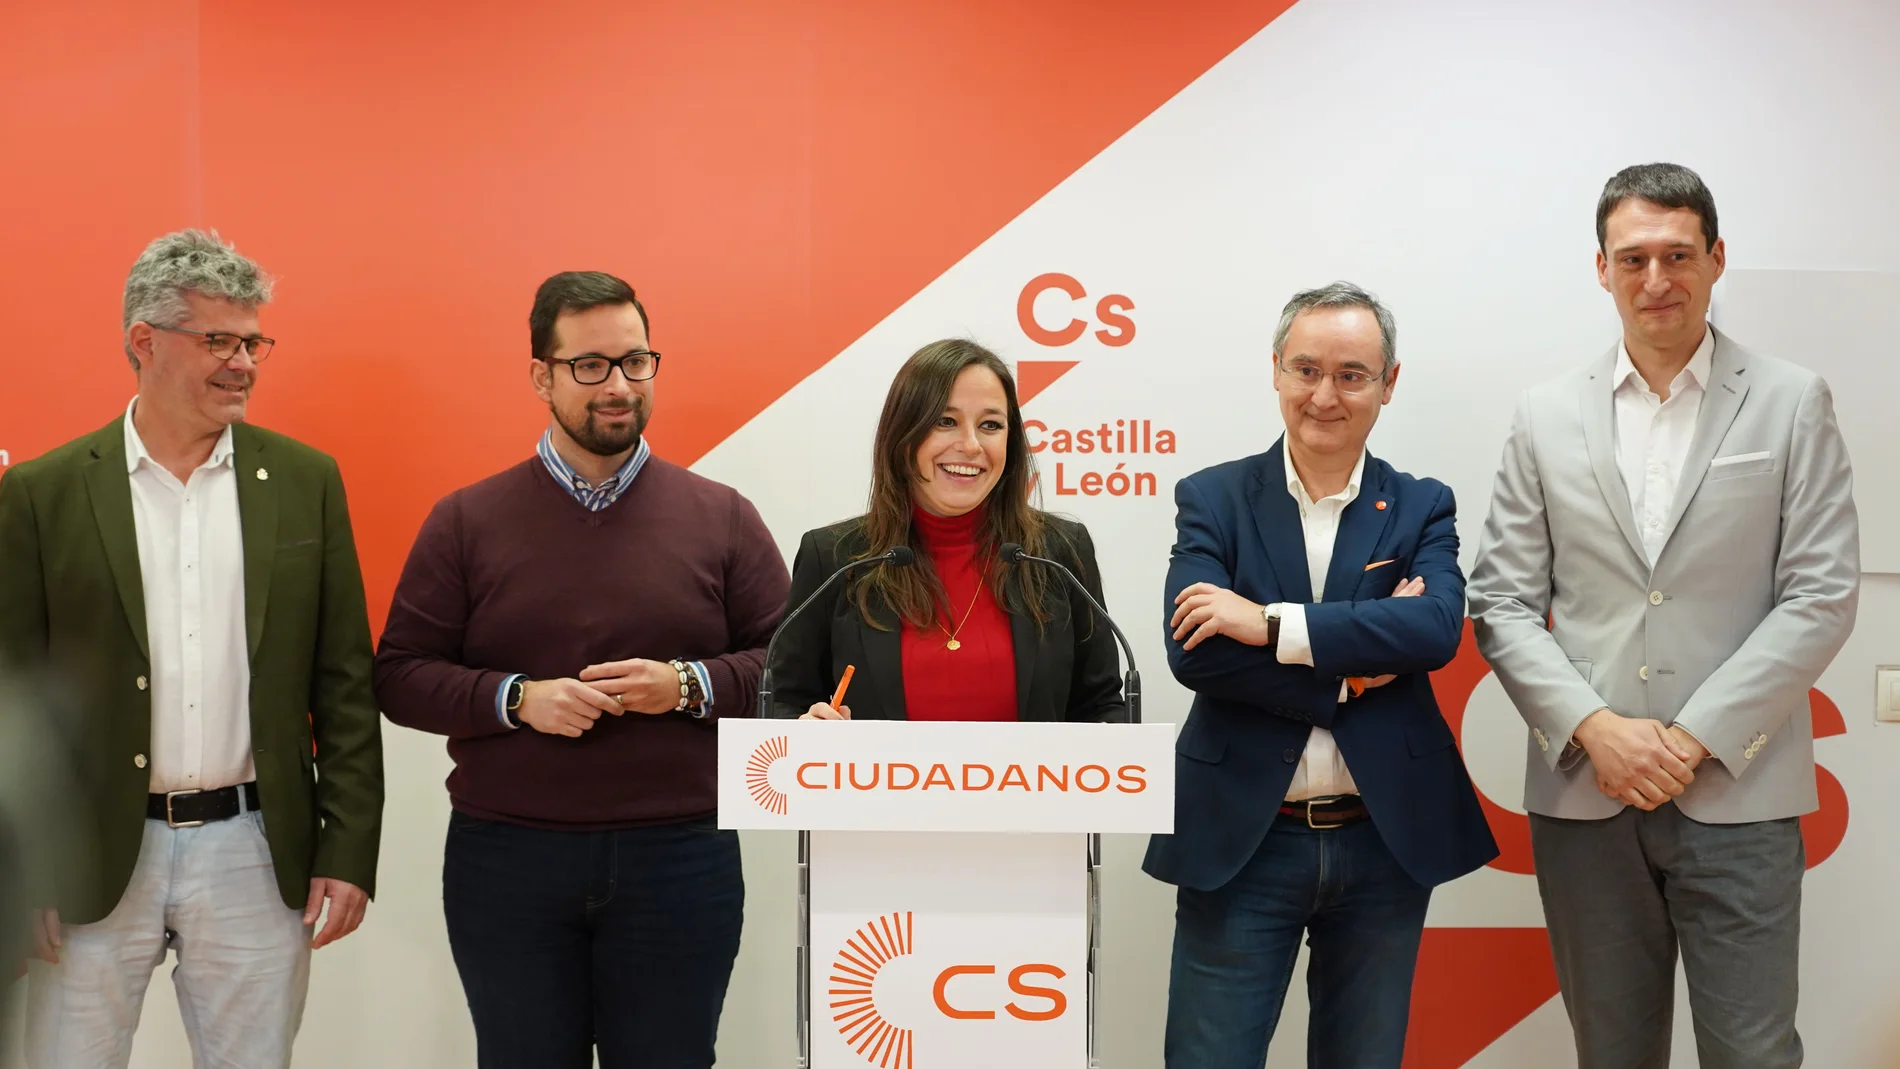 La presidenta de Cs en Castilla y León, Gemma Villarroel, junto a los cuatro miembros de la dirección